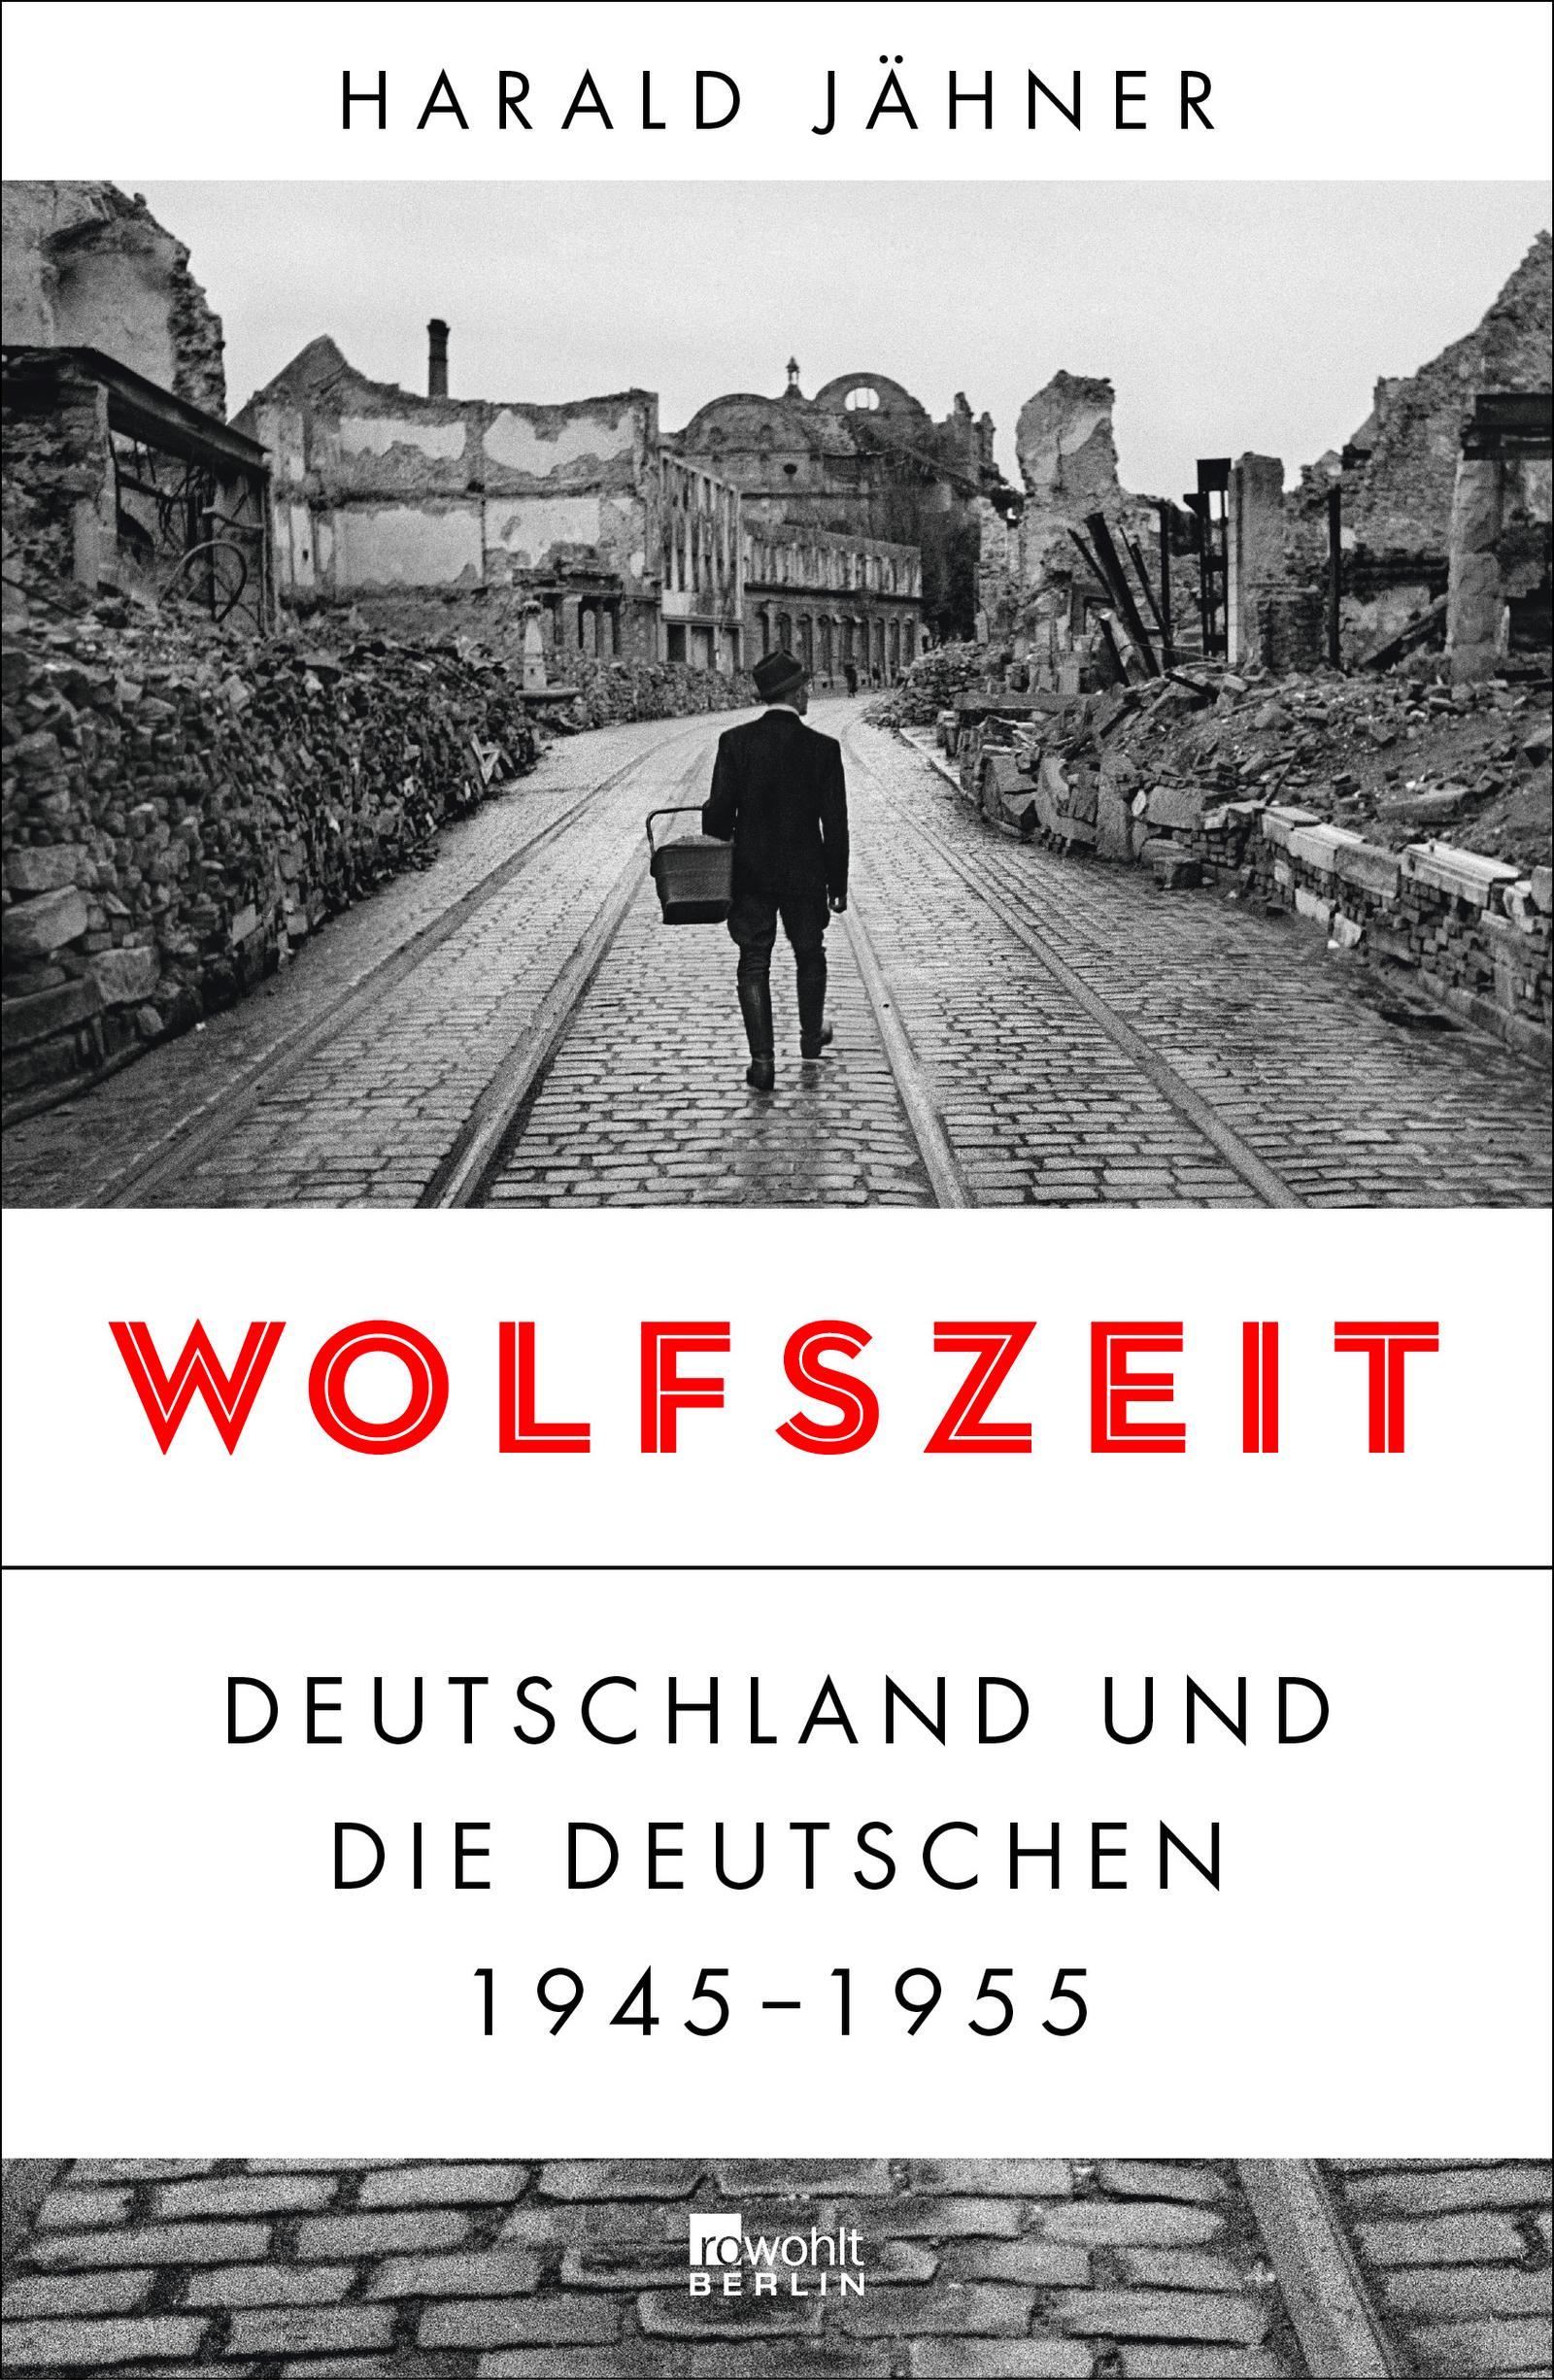 Wolfszeit Deutschland und die Deutschen 1945 - 1955